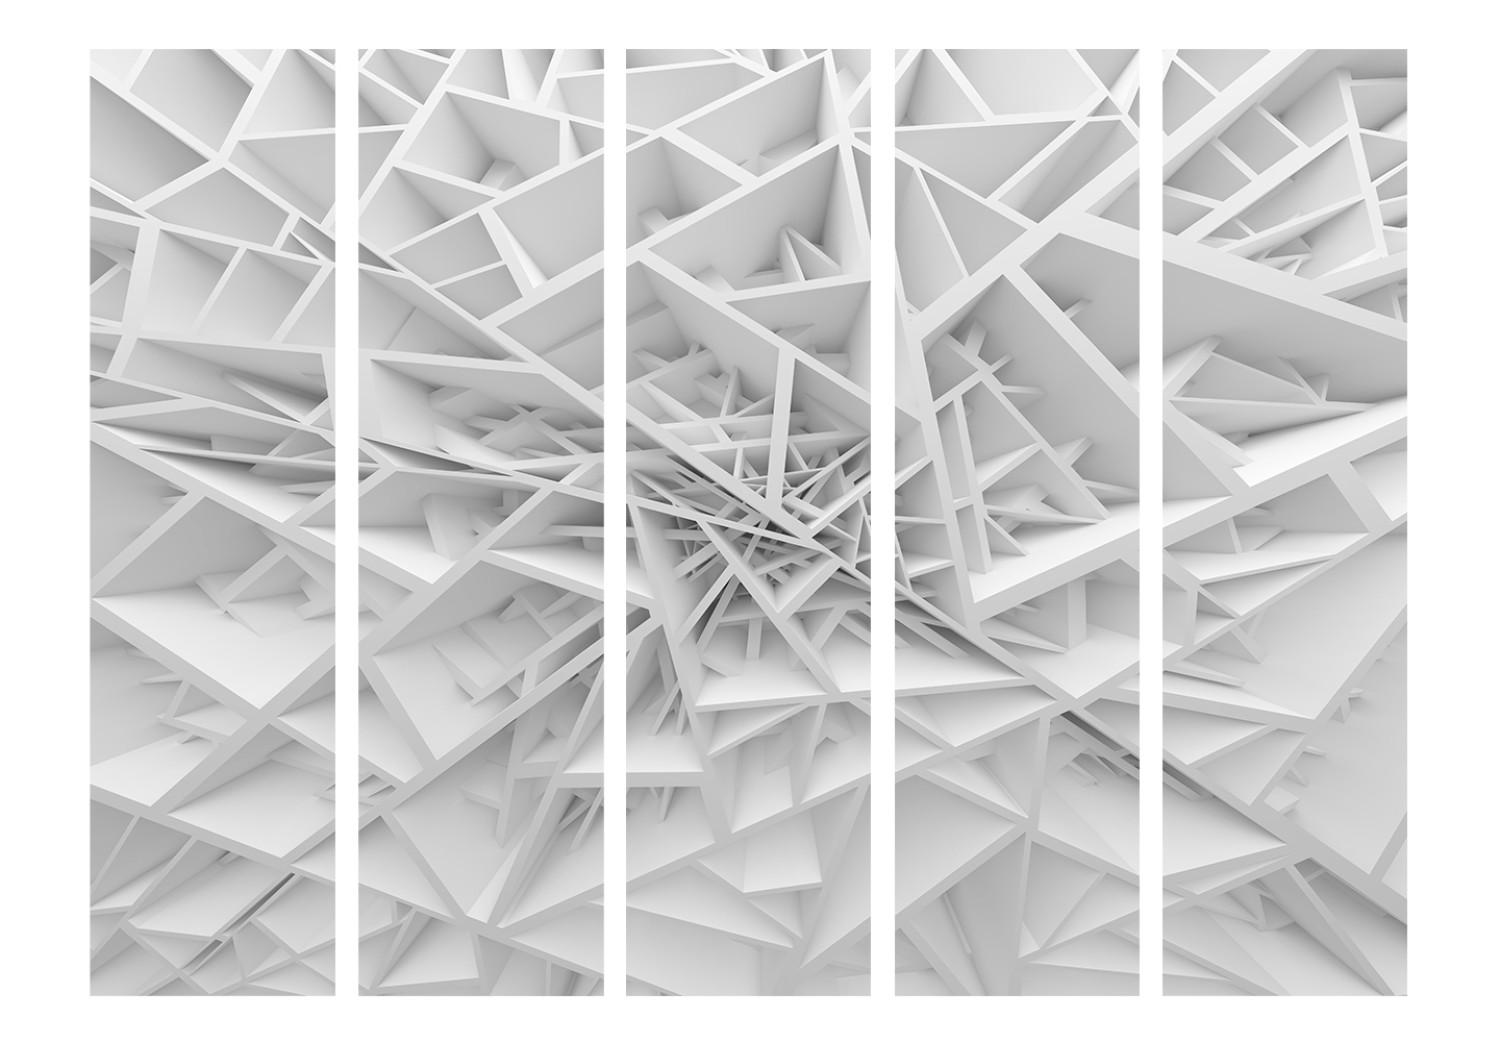 Biombo decorativo Telaraña blanca II - patrones abstractos en blanco y gris